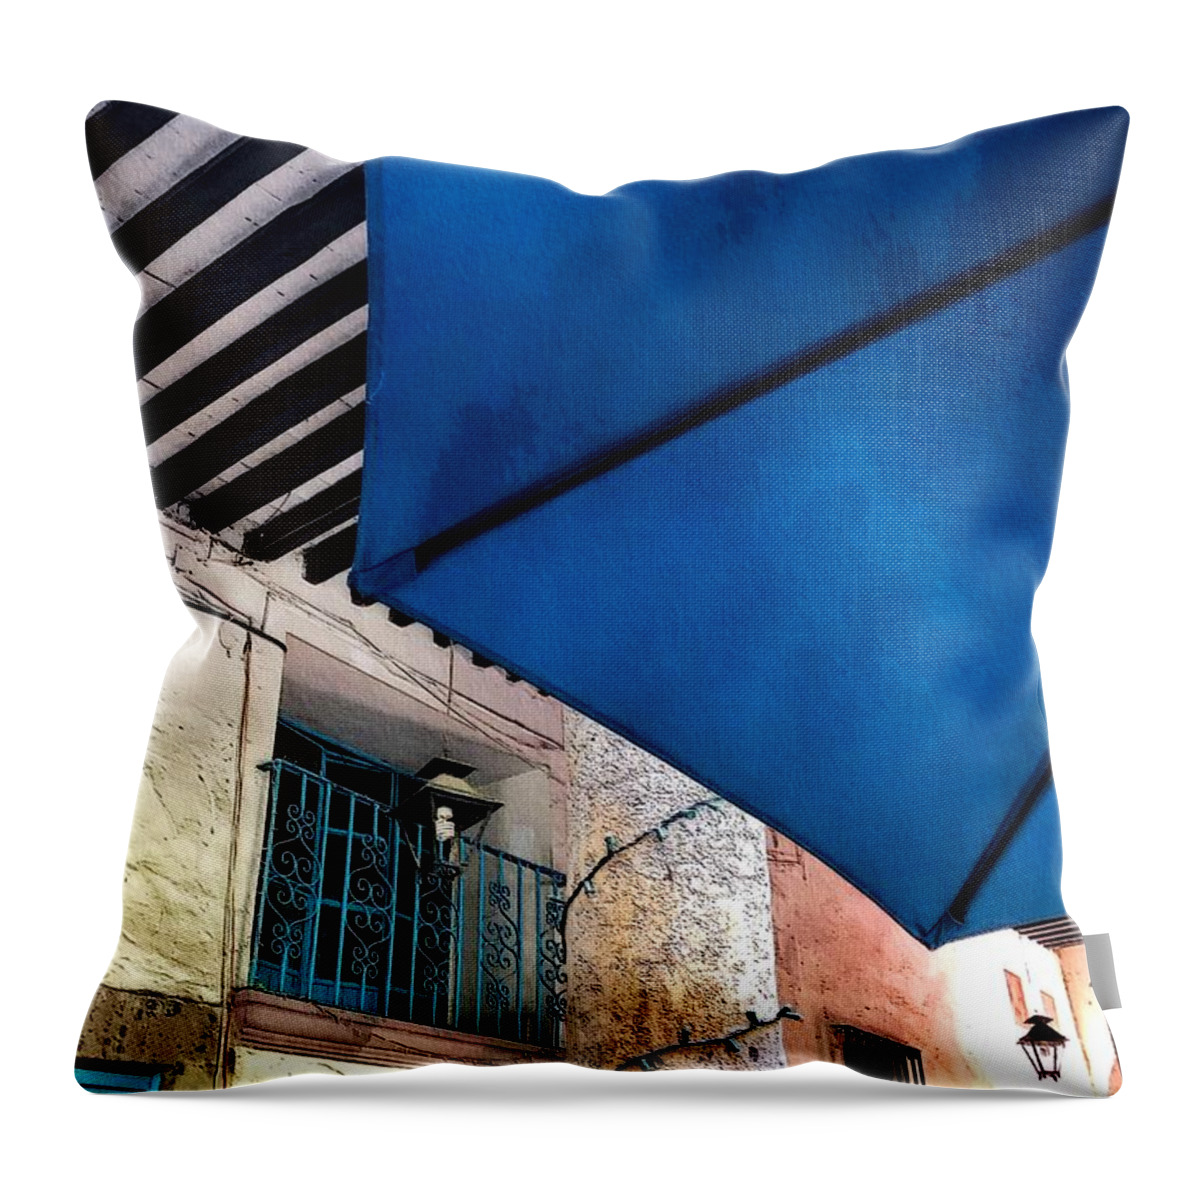 Cafe Throw Pillow featuring the photograph Cafe Umbrella by Diana Rajala